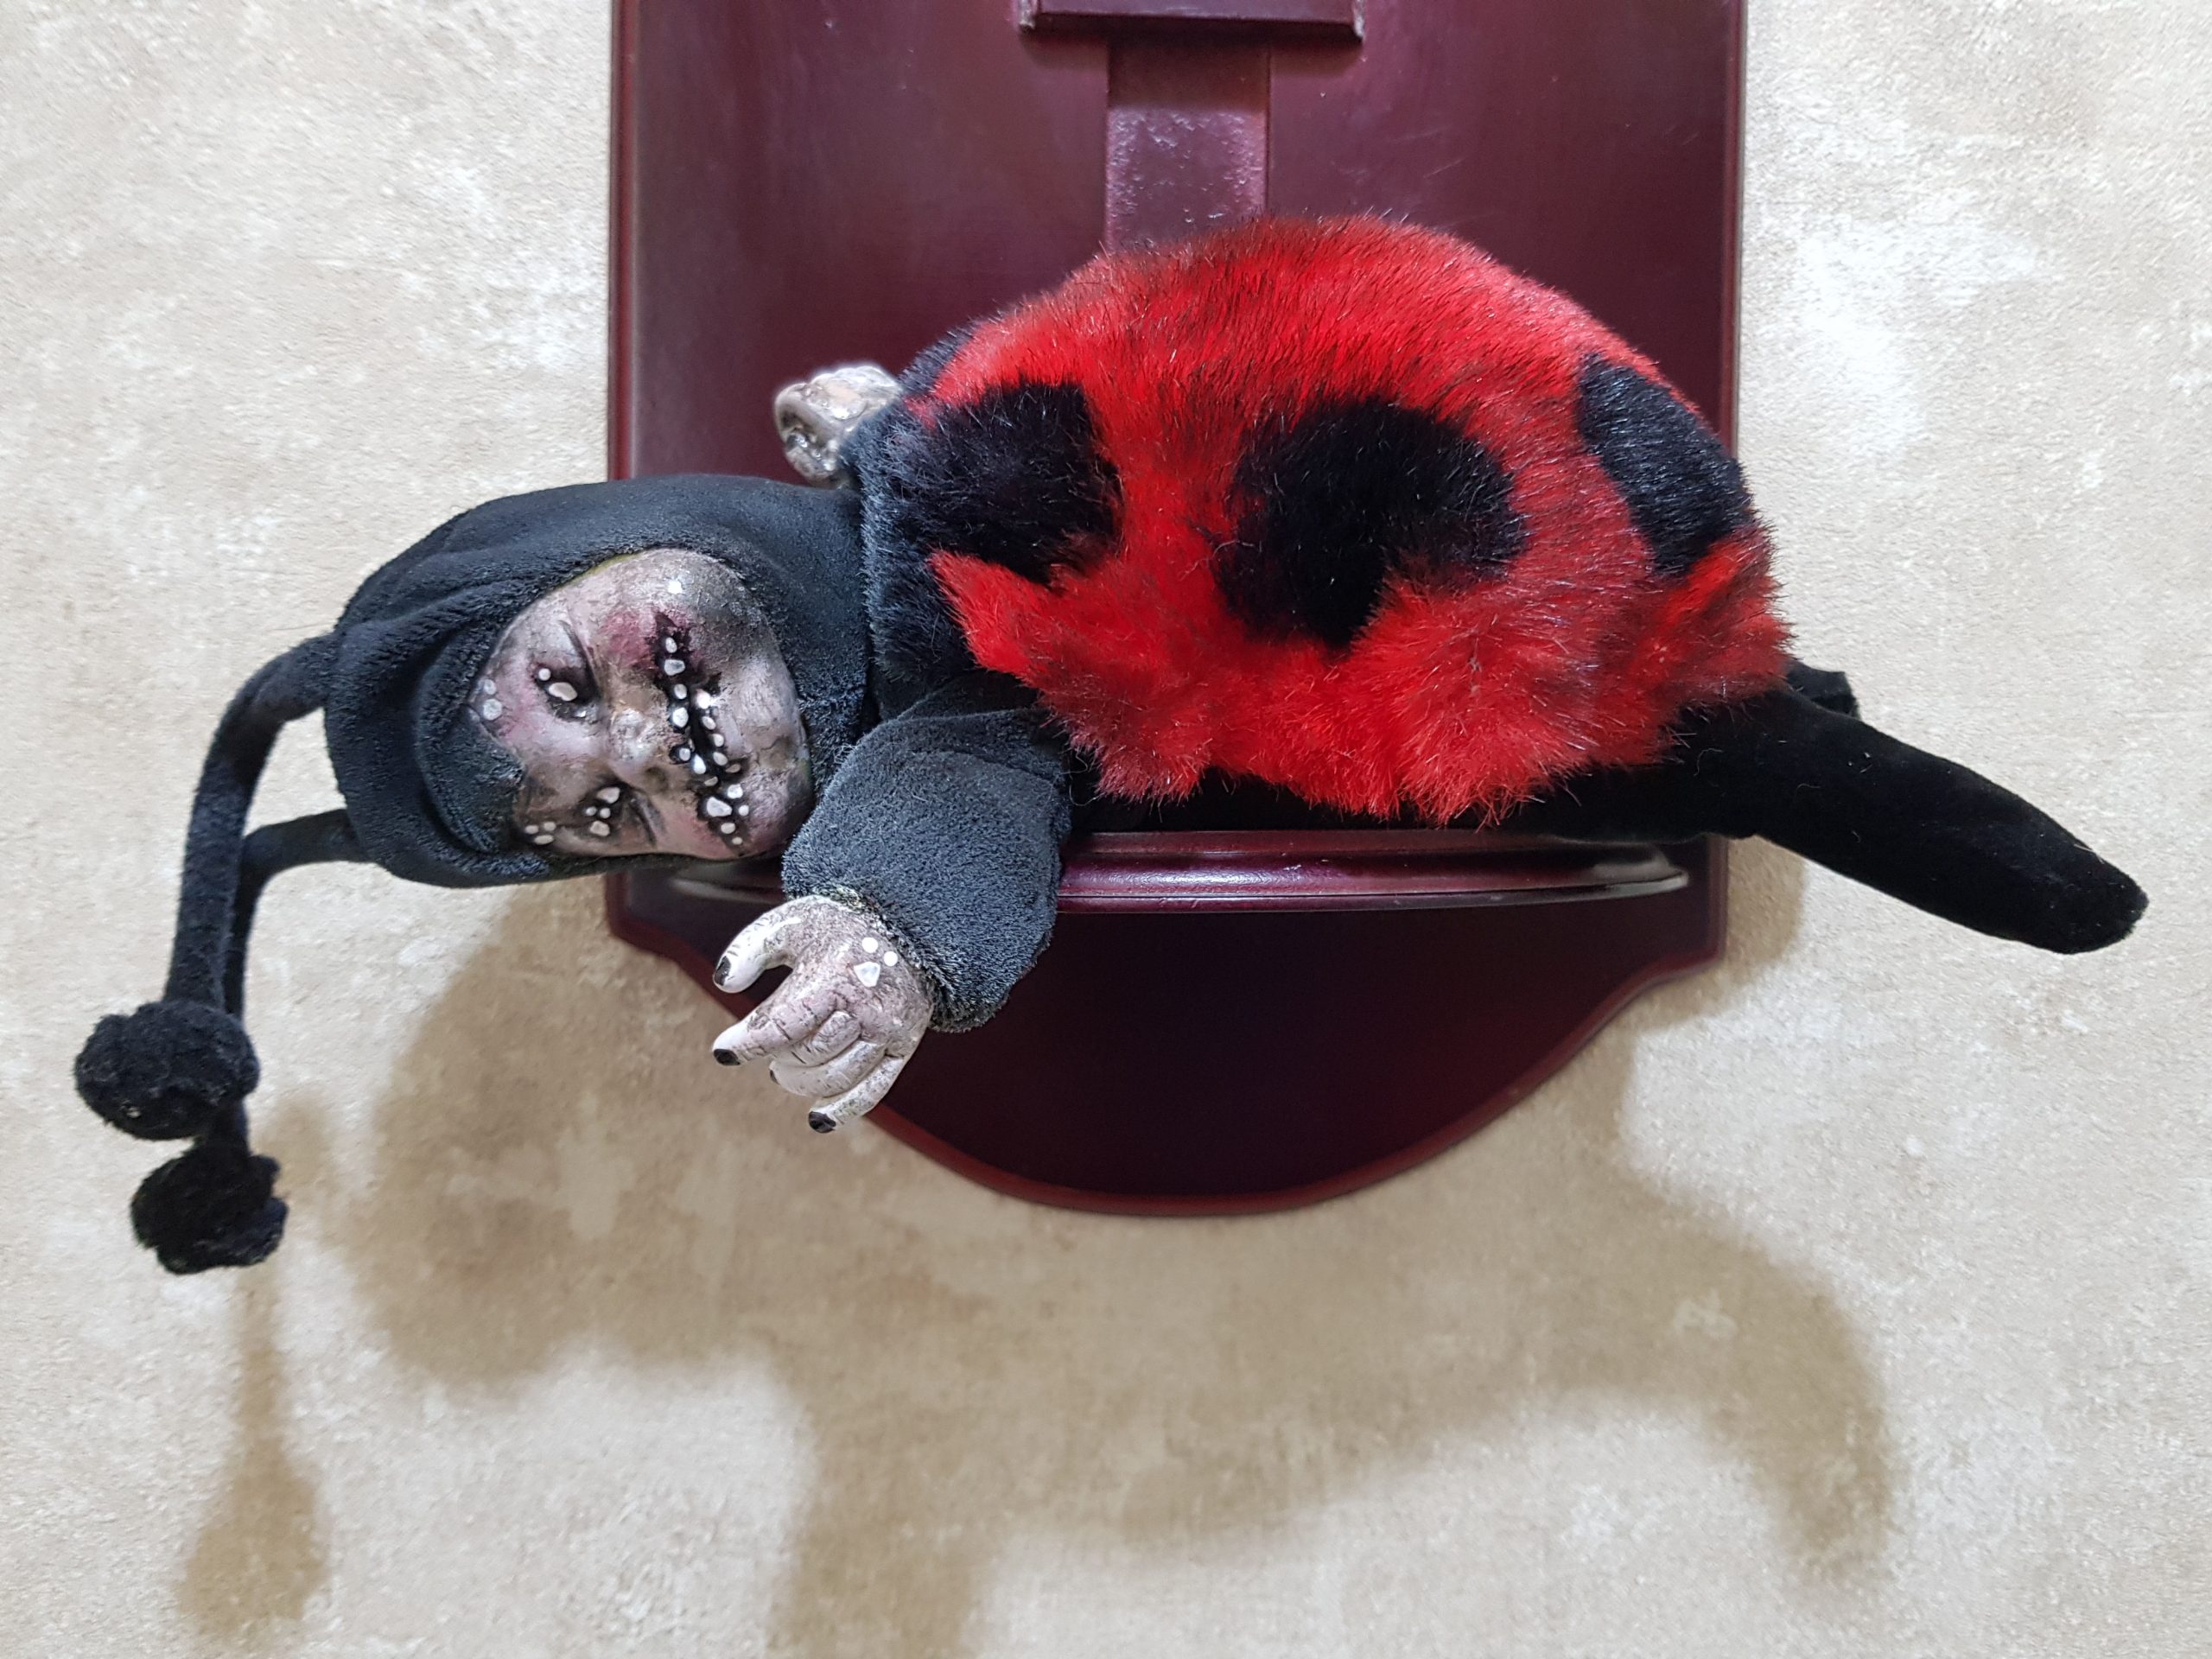 OOAK Gothic Horror Doll -  Ghostly Ladybug Bug Doll